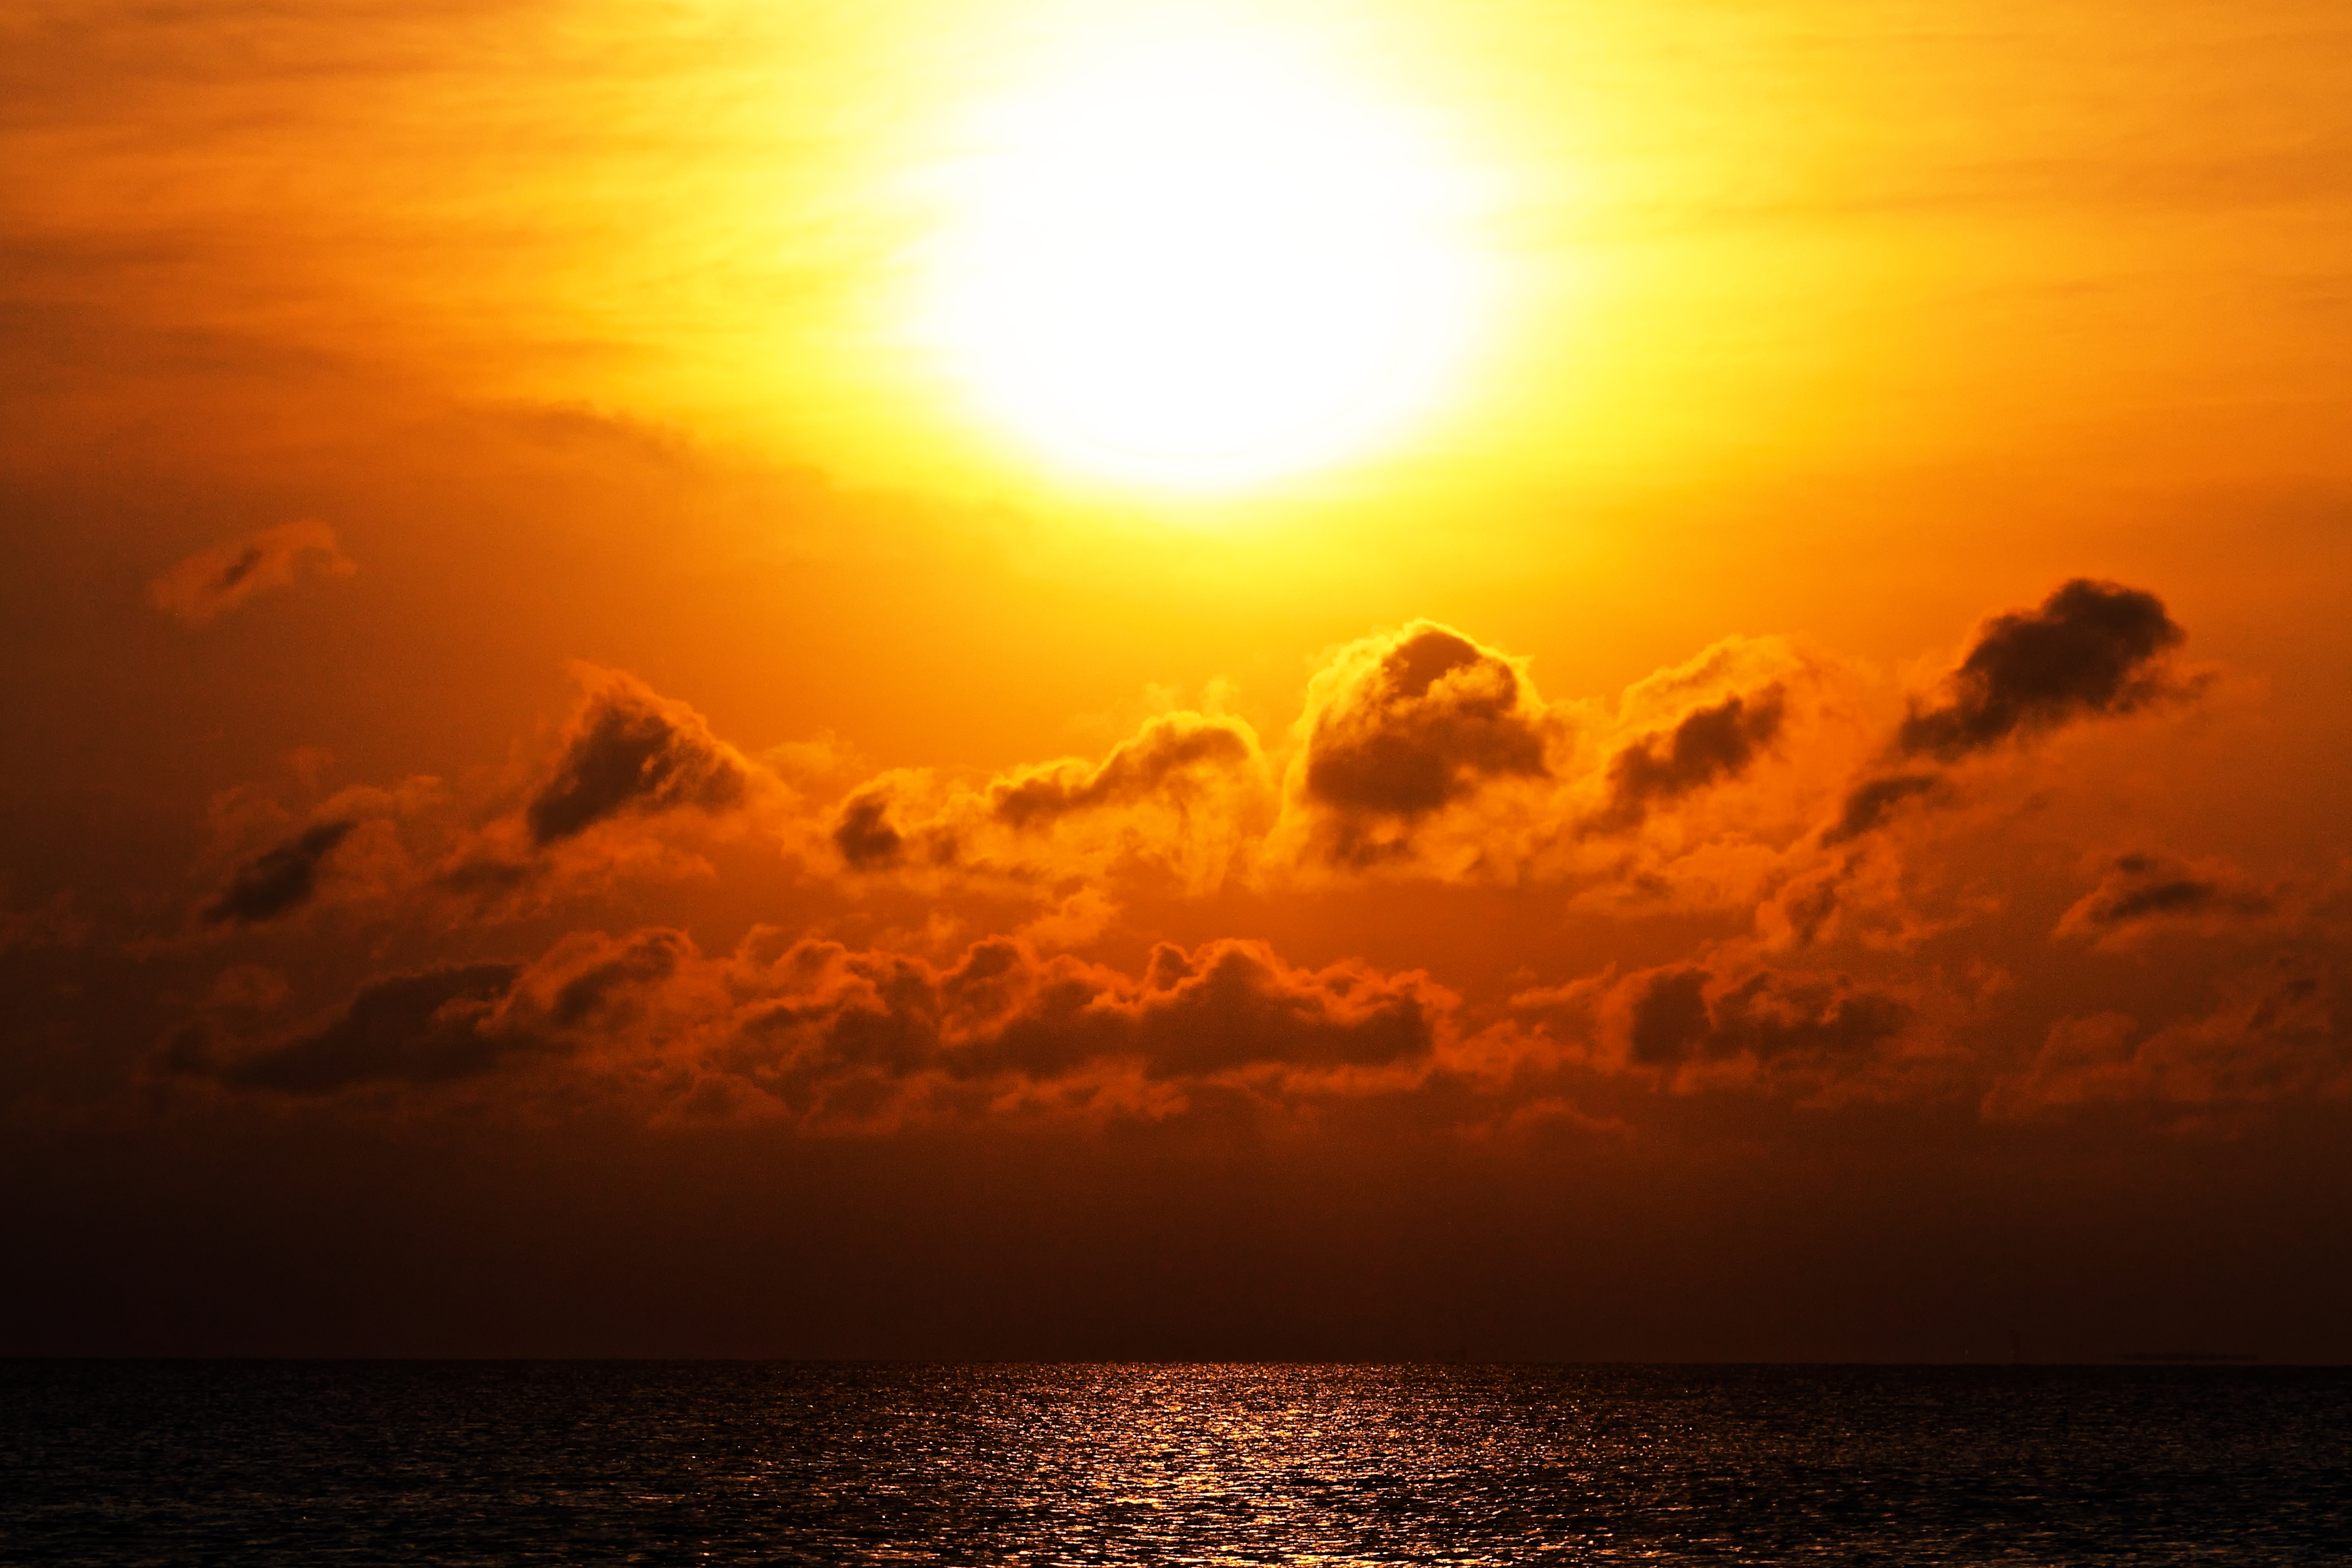 無料写真素材 自然風景 朝焼け 夕焼け 空 雲 水平線 太陽画像素材なら 無料 フリー写真素材のフリーフォト